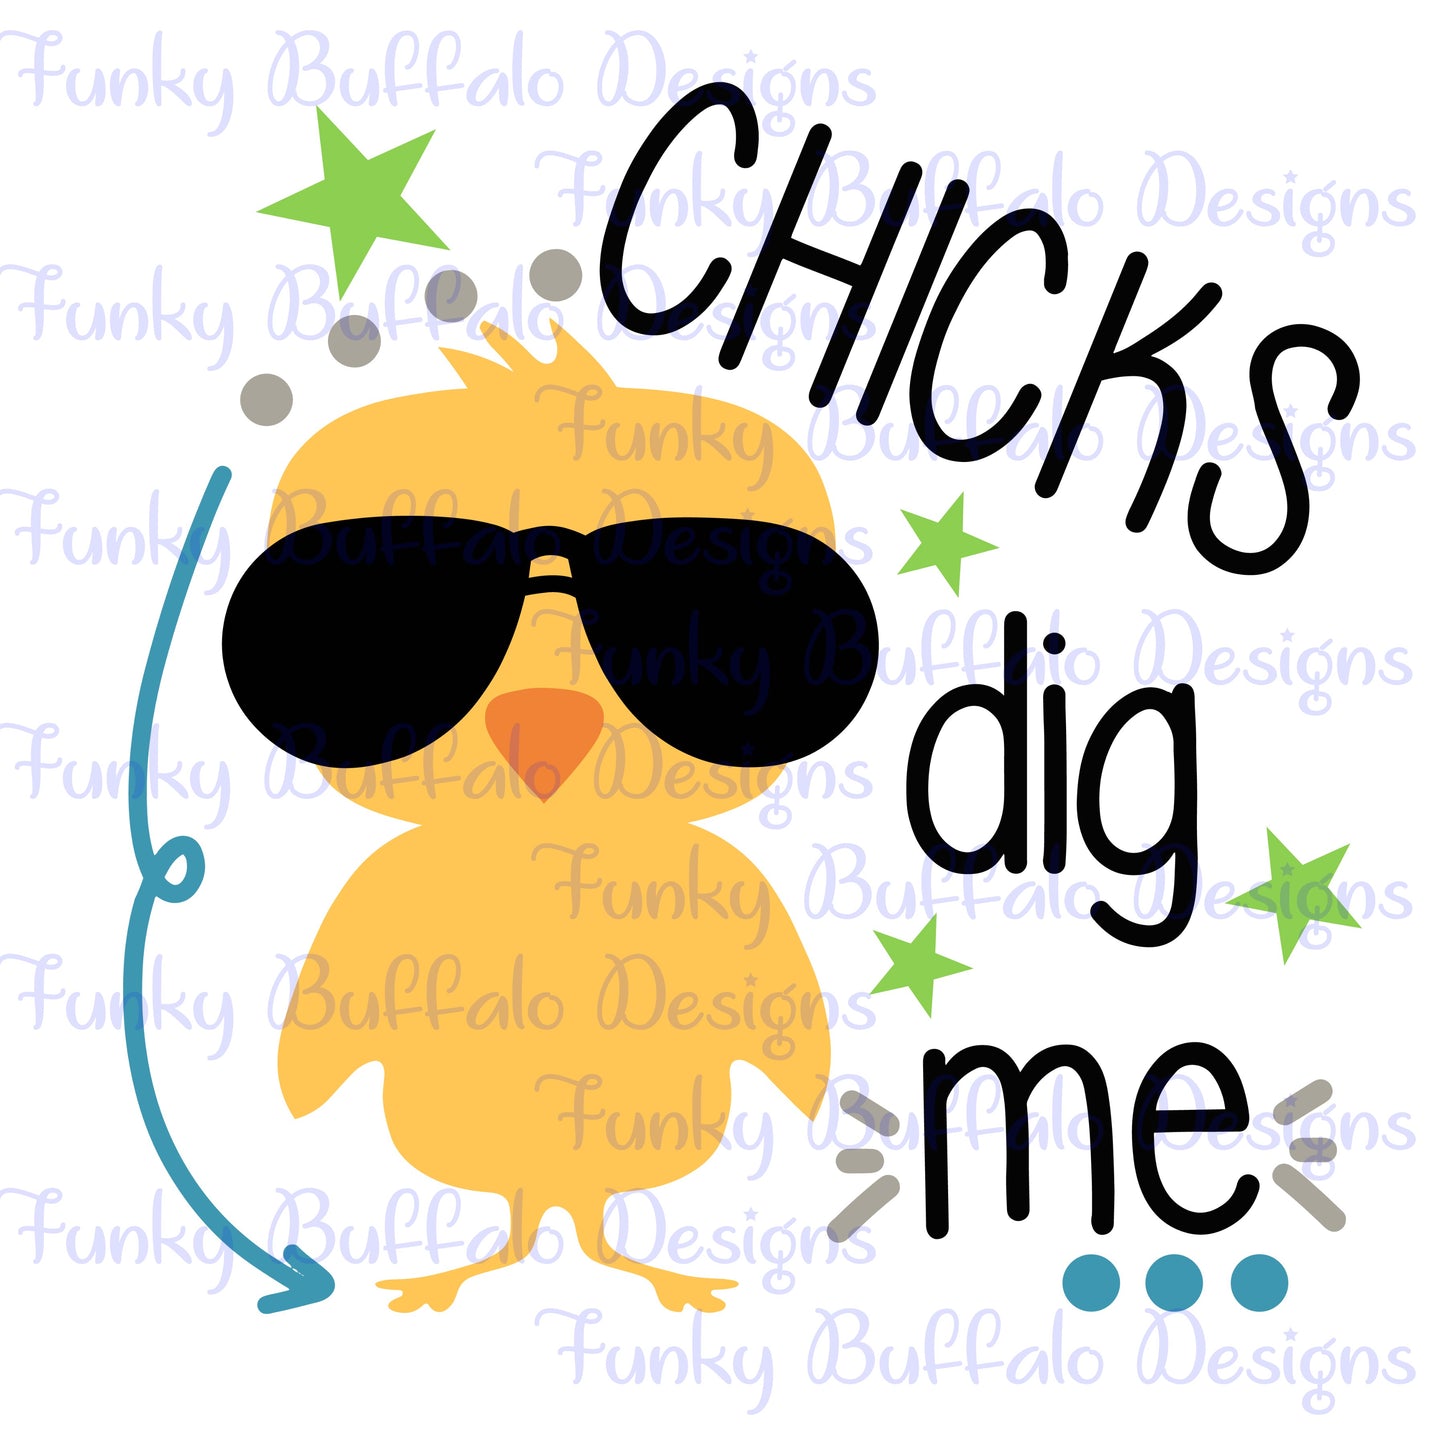 Chicks DIg Me